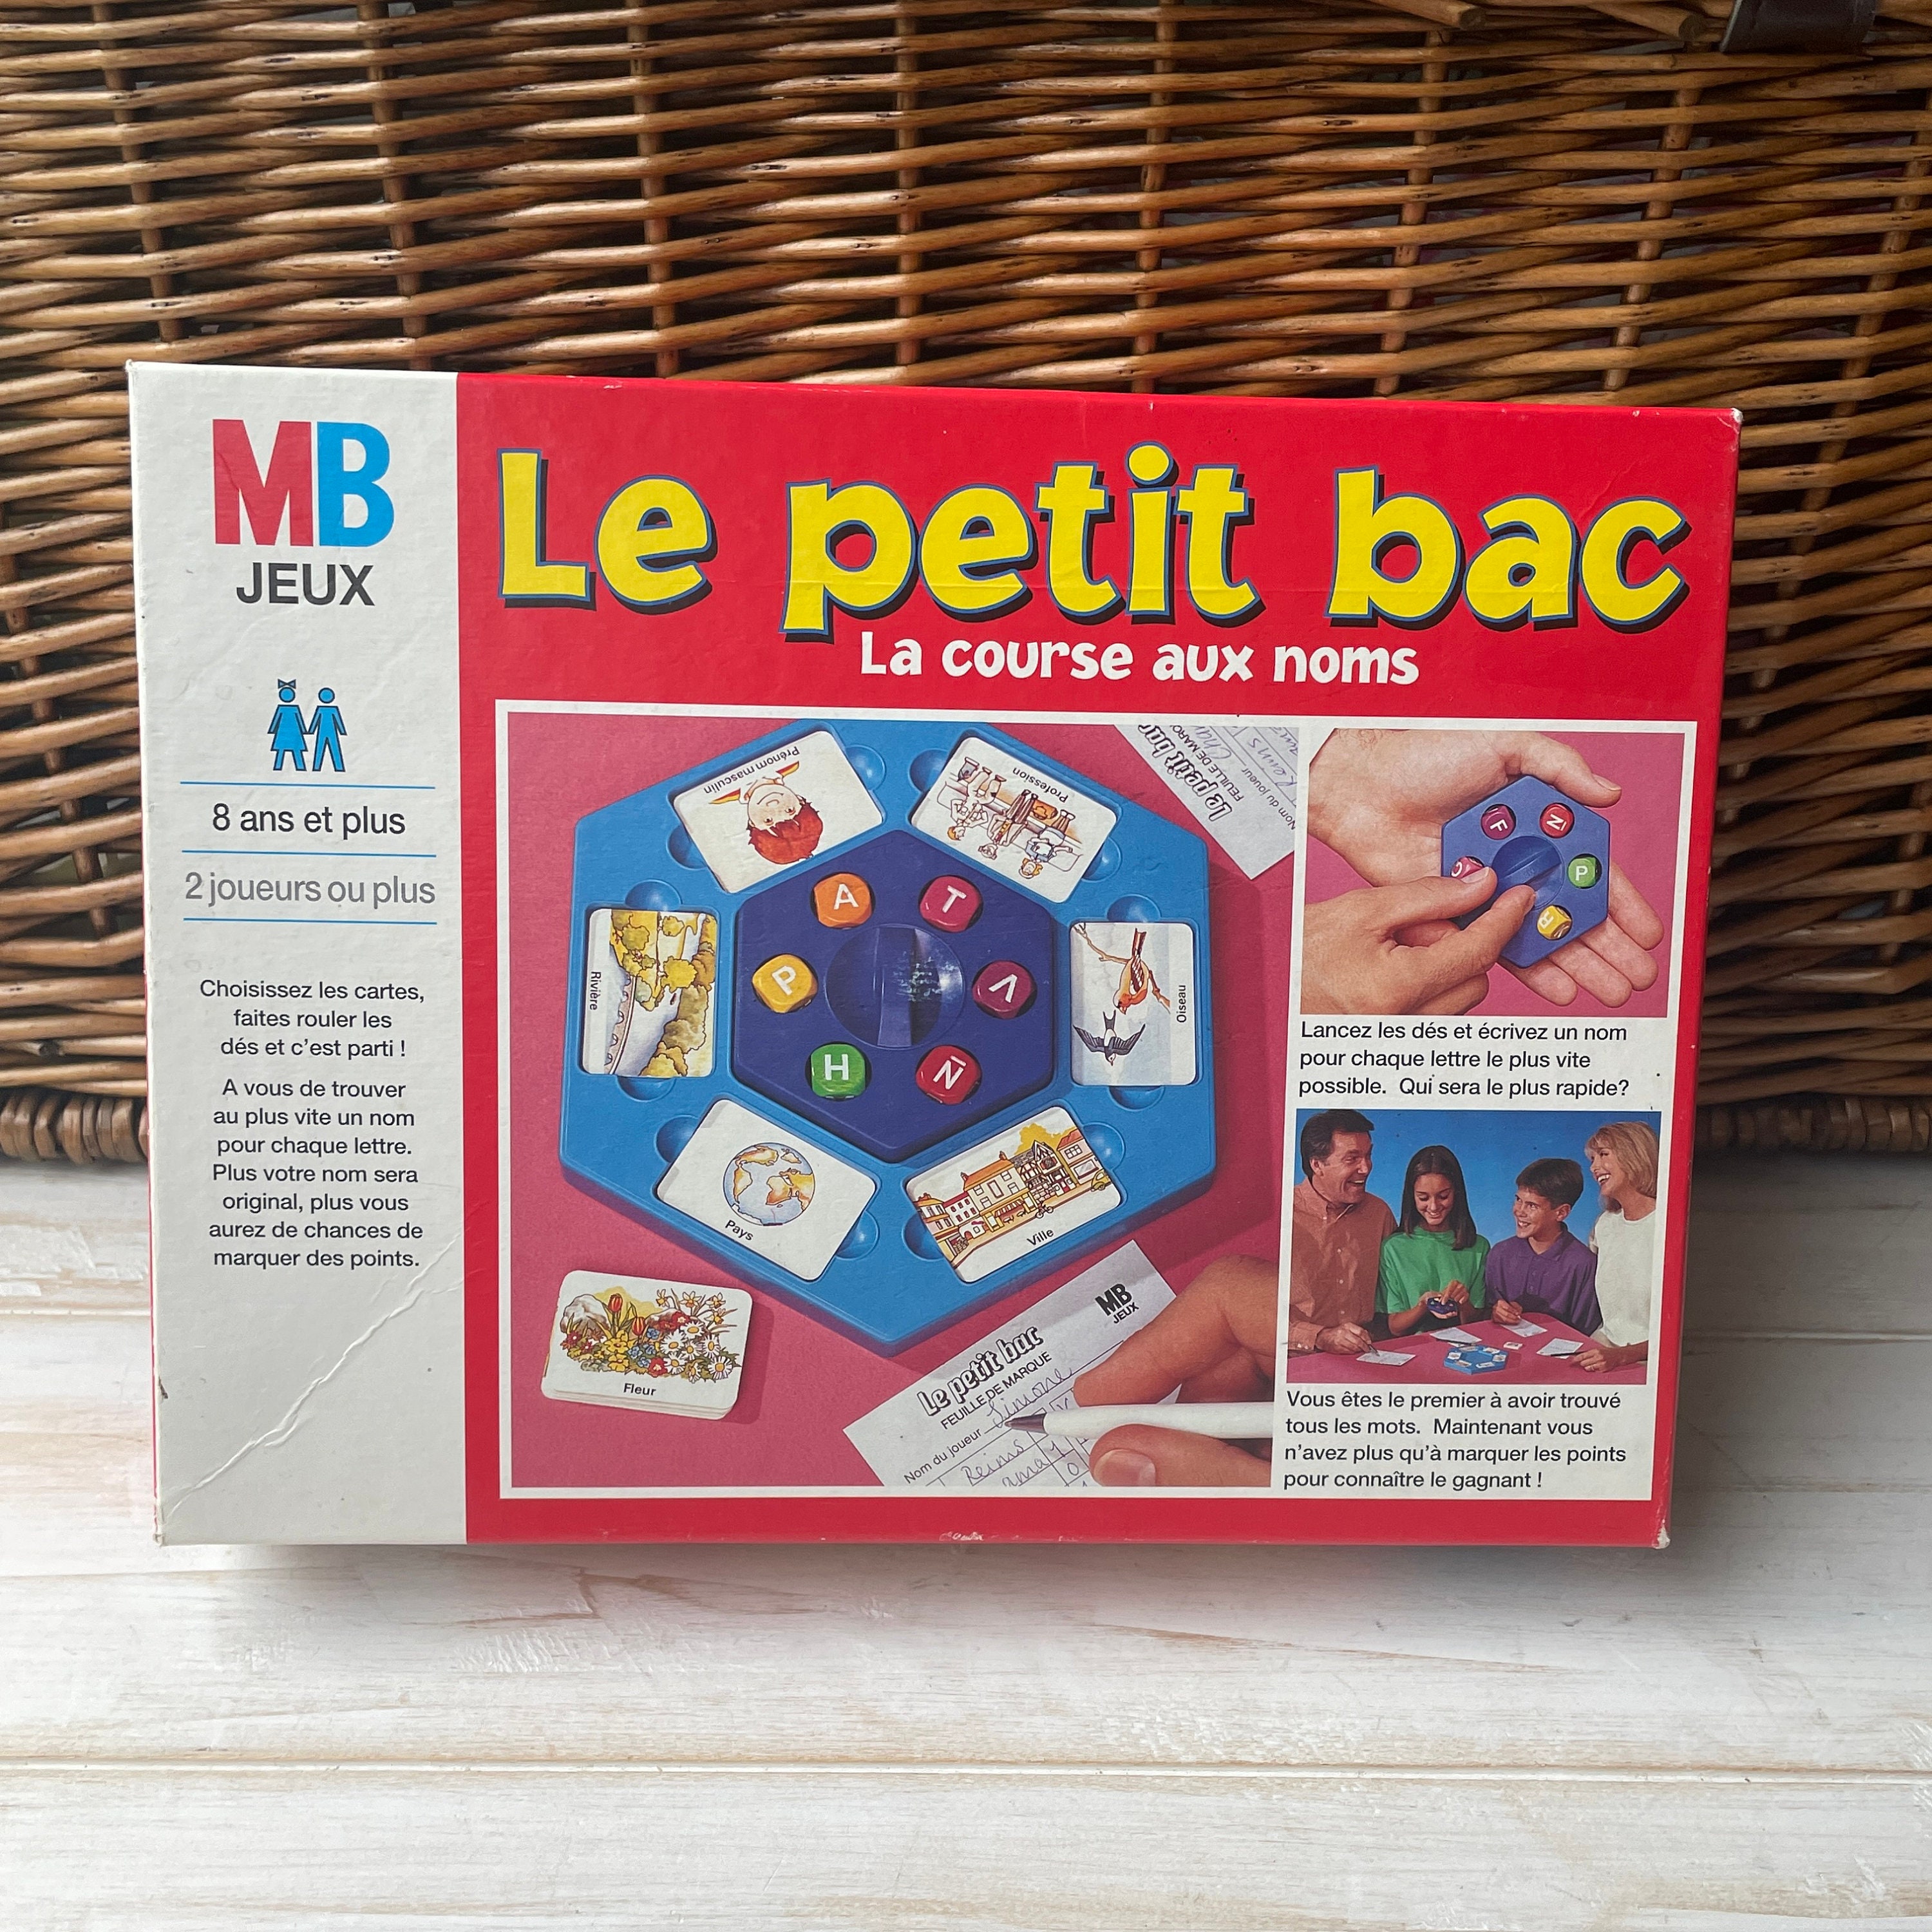 Le petit bac - Jeu MB 1996 - jouets rétro jeux de société figurines et  objets vintage